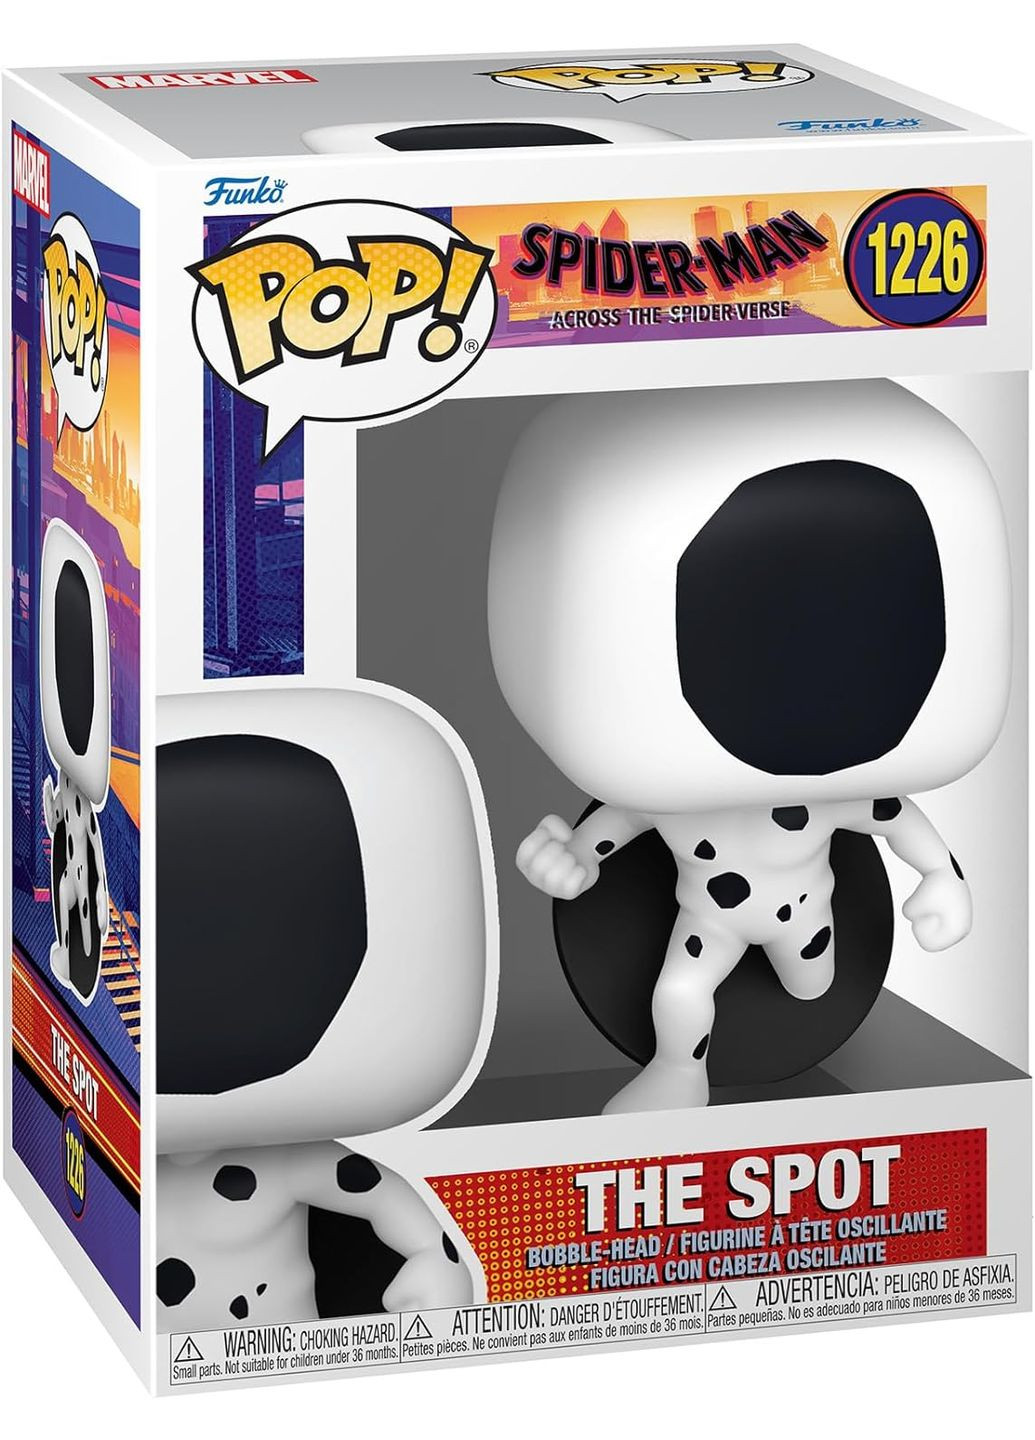 Спайдер мен фігурка Marvel Фанко Spider Man The Spot Пляма дитяча ігрова фігурка #1226 Funko Pop (293850629)